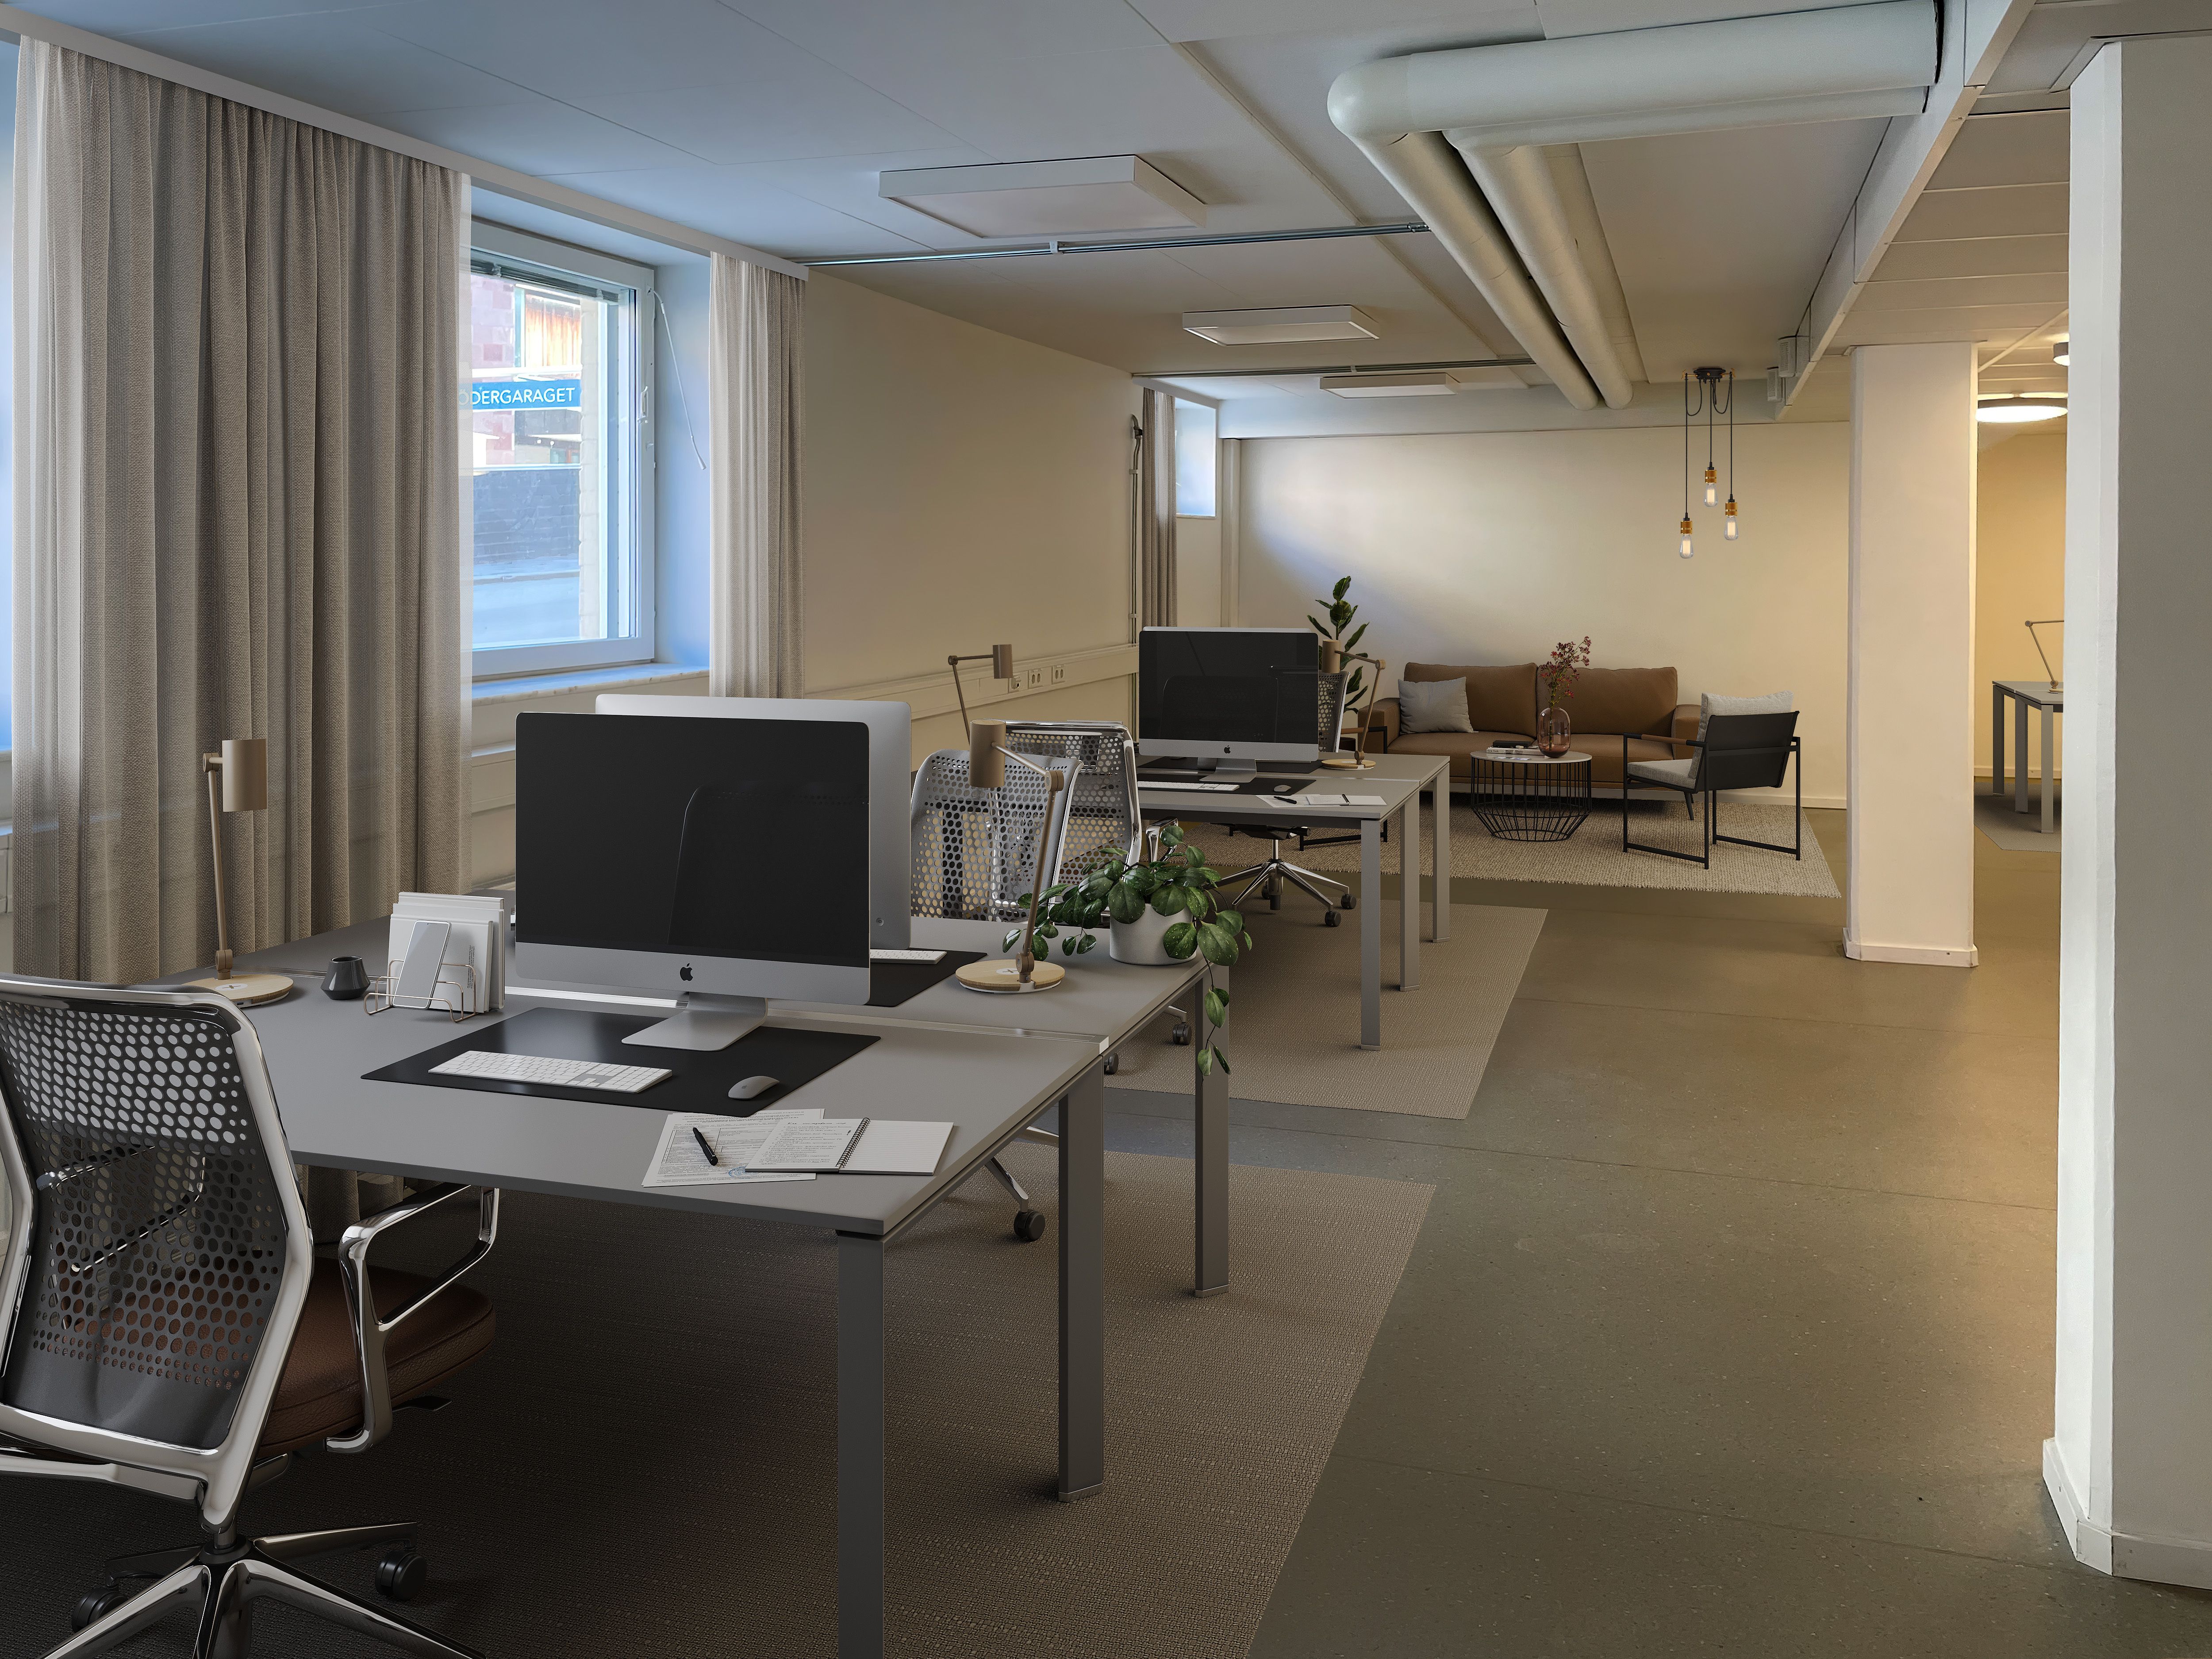 Visionsskiss, öppet kontorslandskap med plats för fyra skrivbord och loungedel.